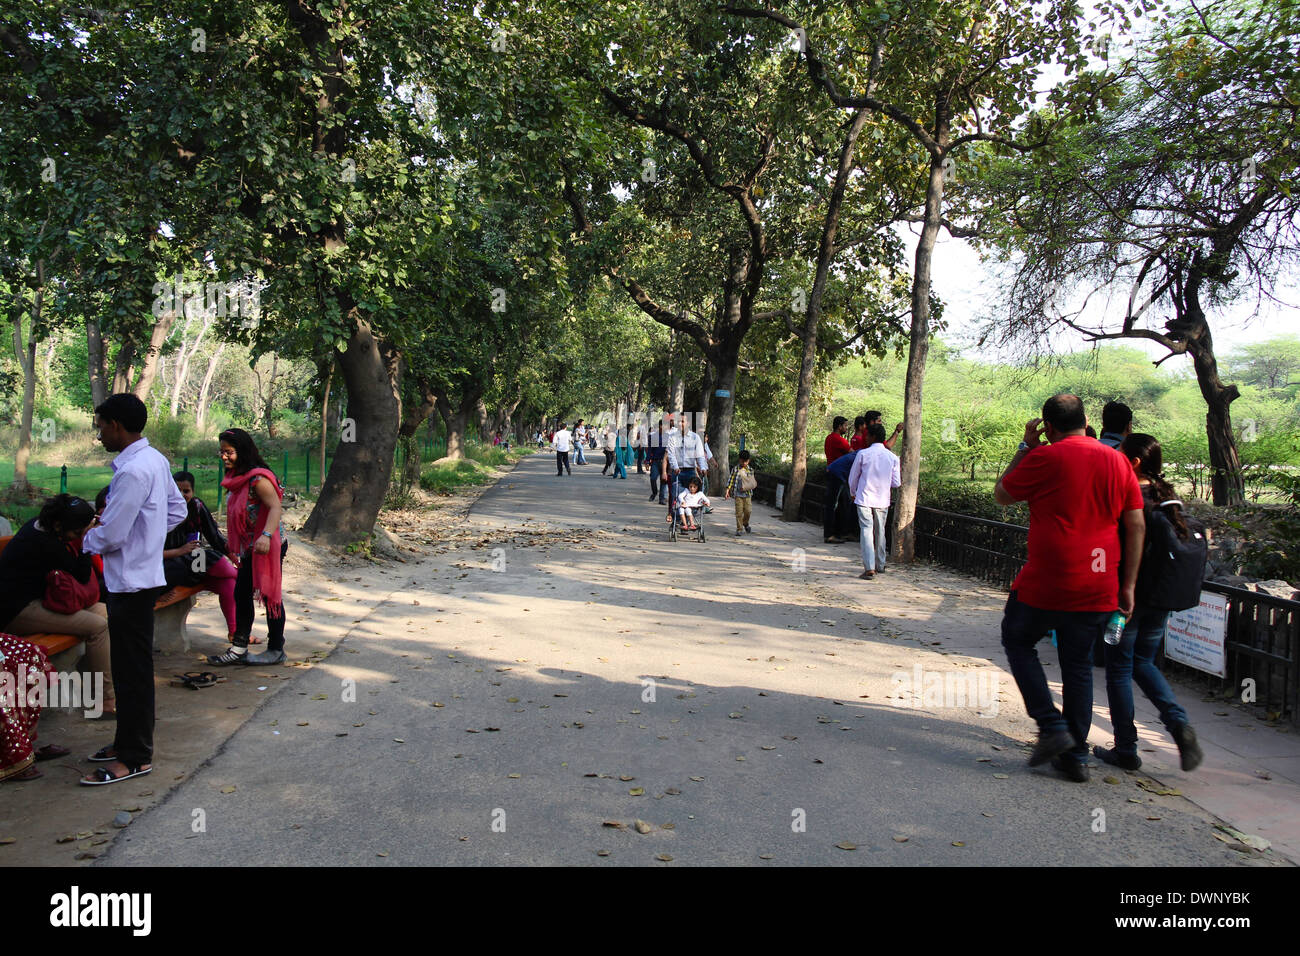 Les visiteurs à l'intérieur du zoo de Delhi sur la route bordée d'arbres, peu de marche le long d'autres observateurs et les boîtiers des animaux sur les deux côtés de la route Banque D'Images